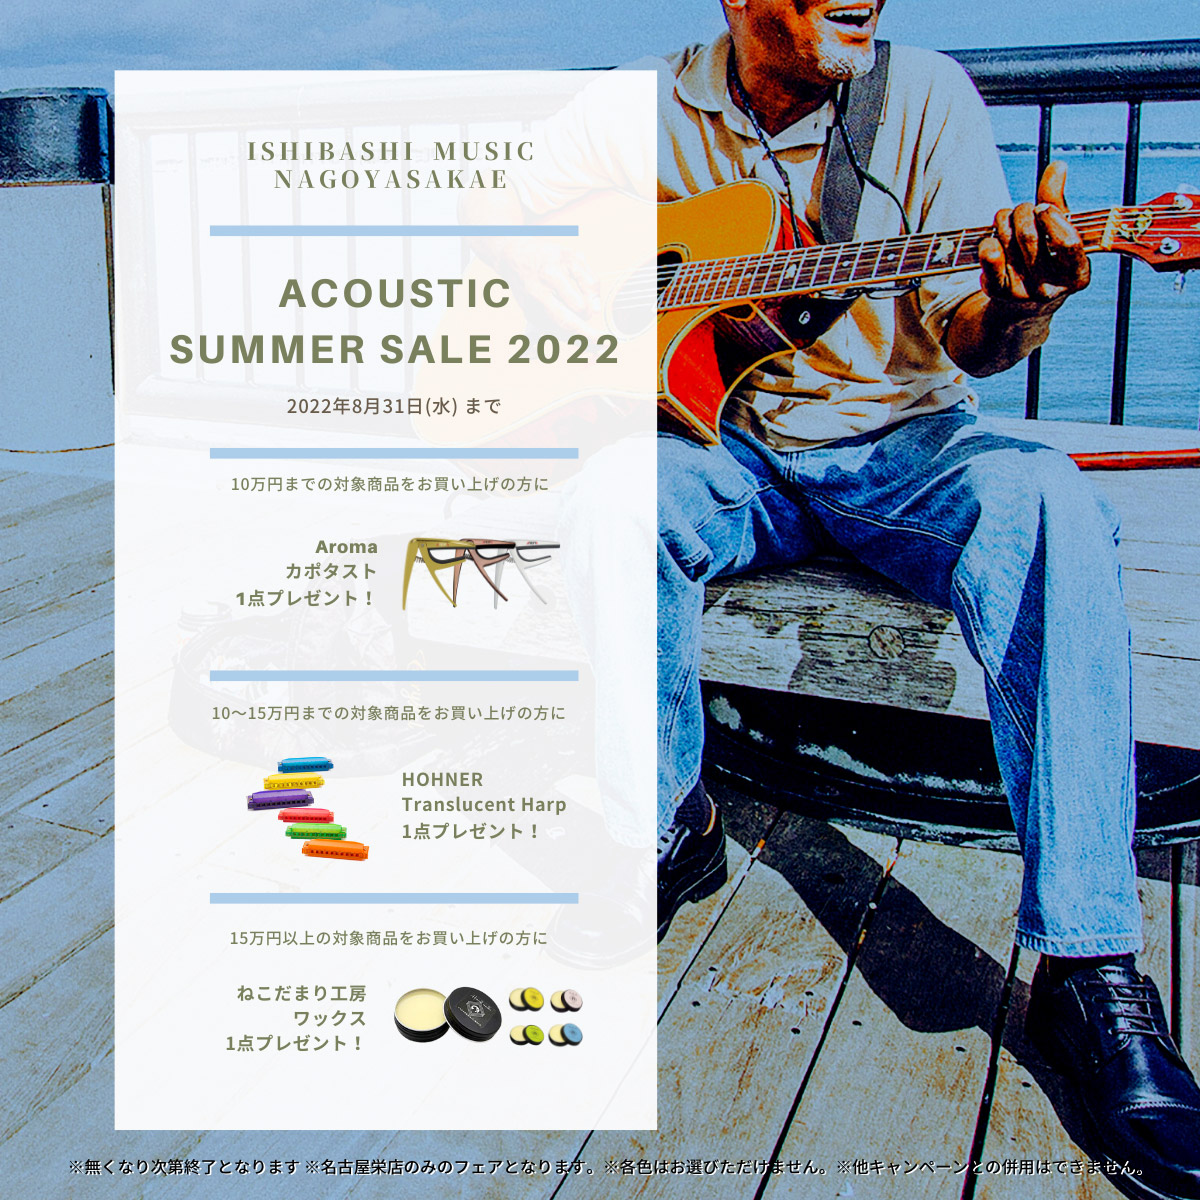 Acoustic Summer Sale